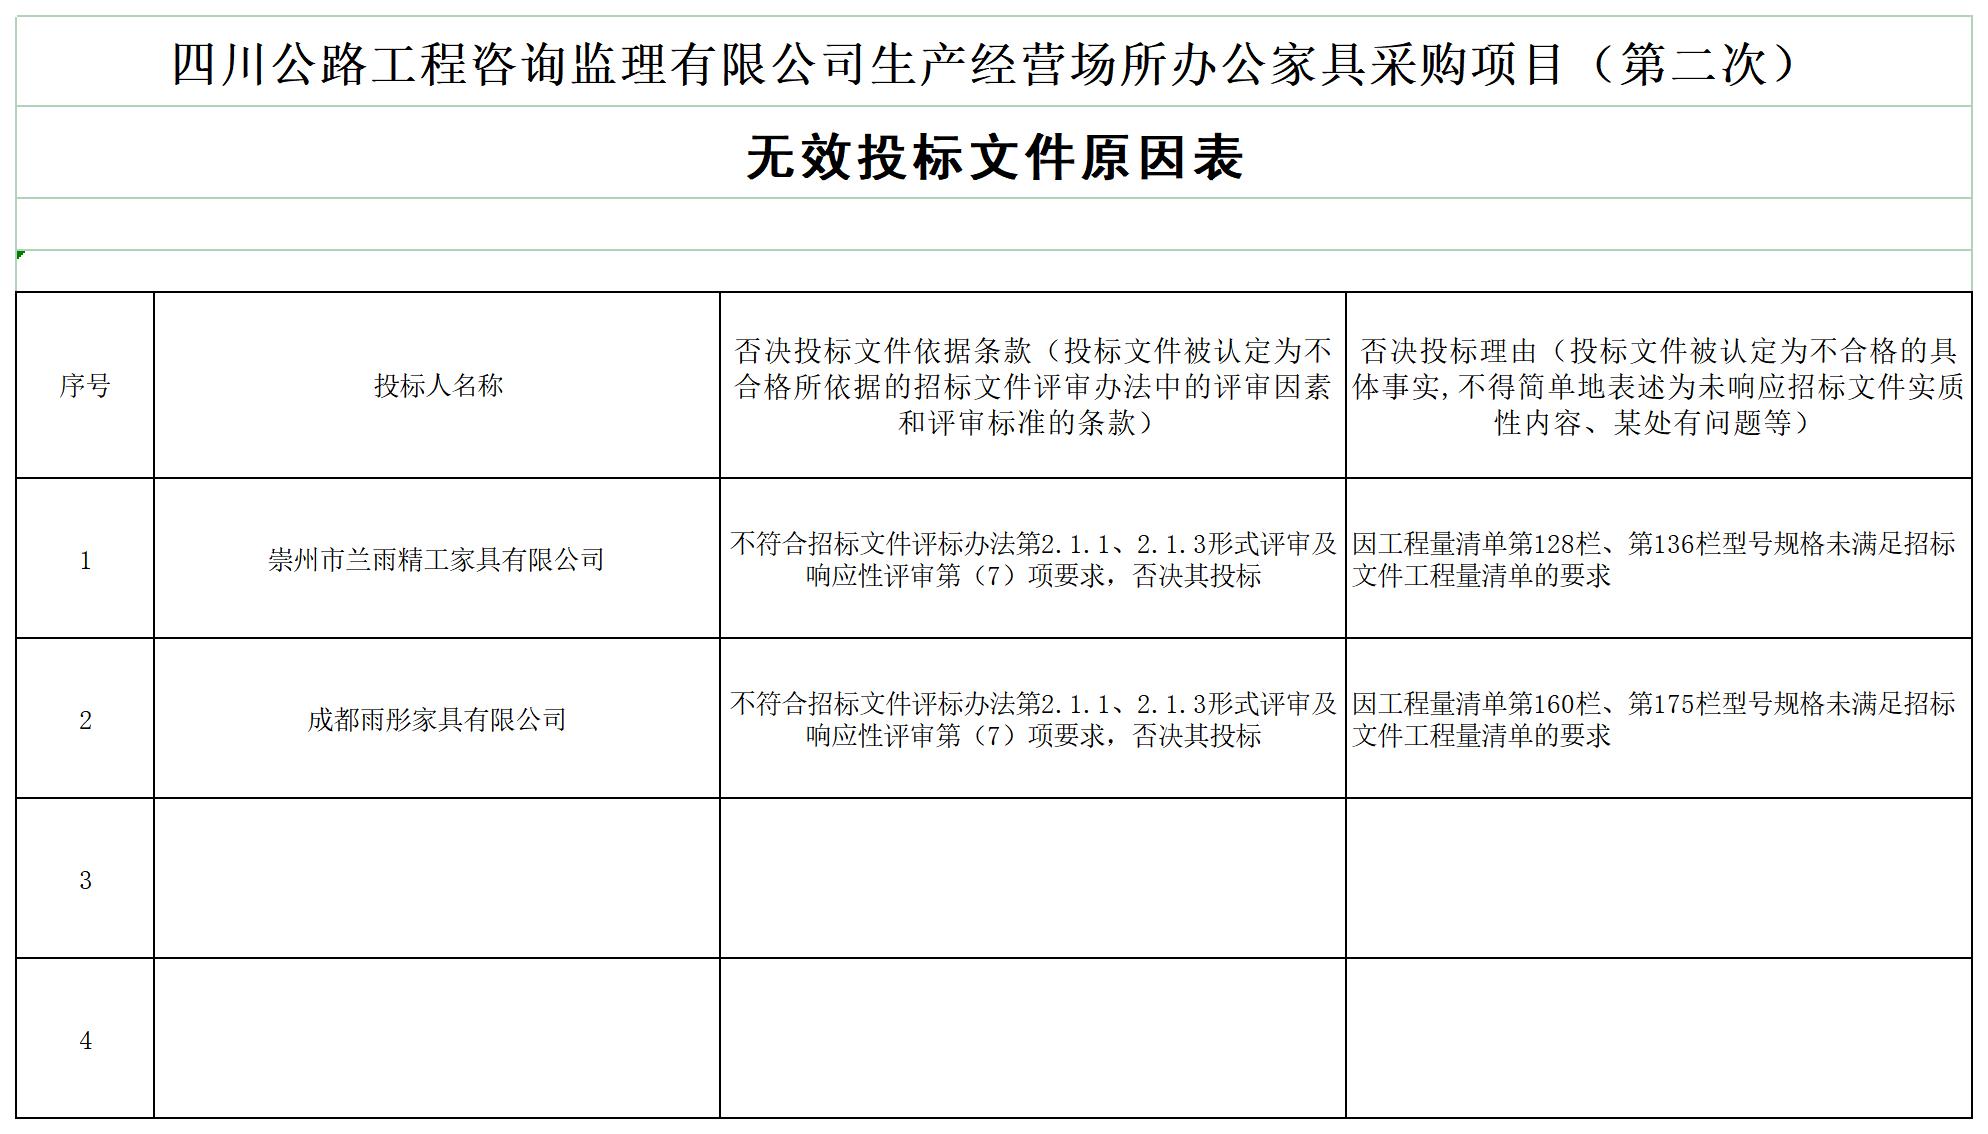 HTH华体会·(中国)官方网站生产经营场所办公家具采购项目（第二次）中标候选人及无效投标文件原因_A1E9.jpg